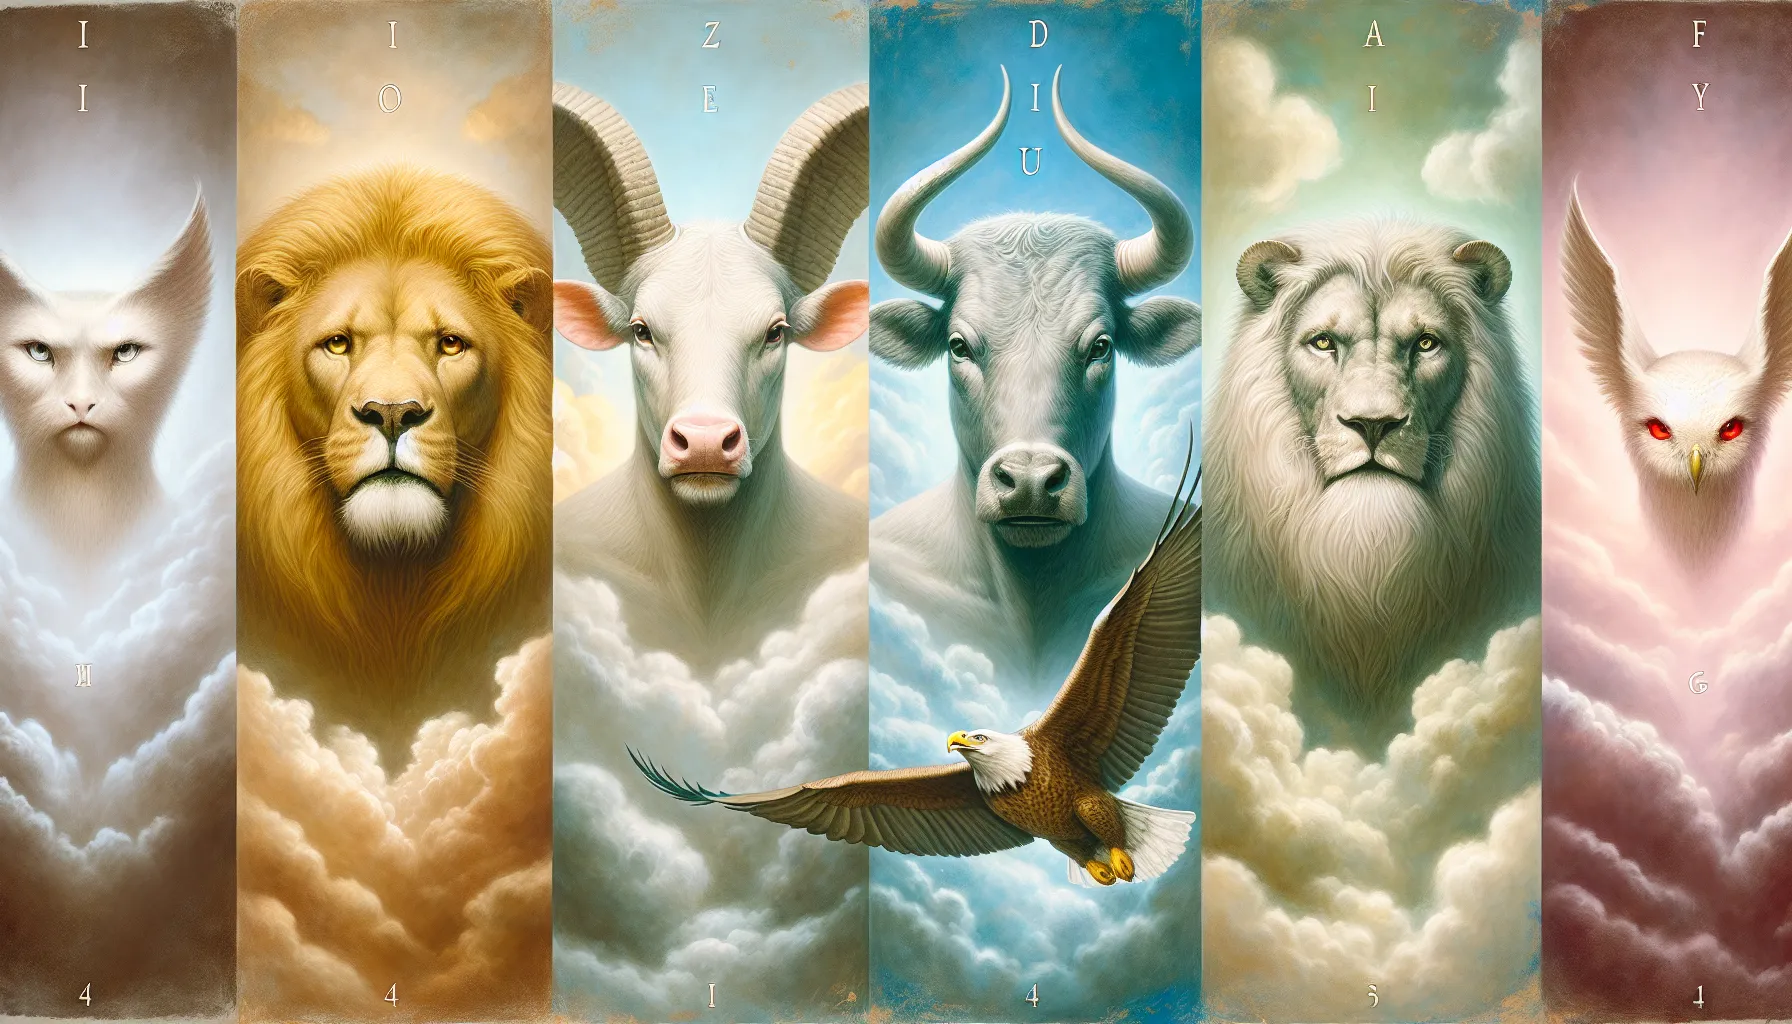 Representación artística de los cuatro seres vivientes descritos en el libro del Apocalipsis